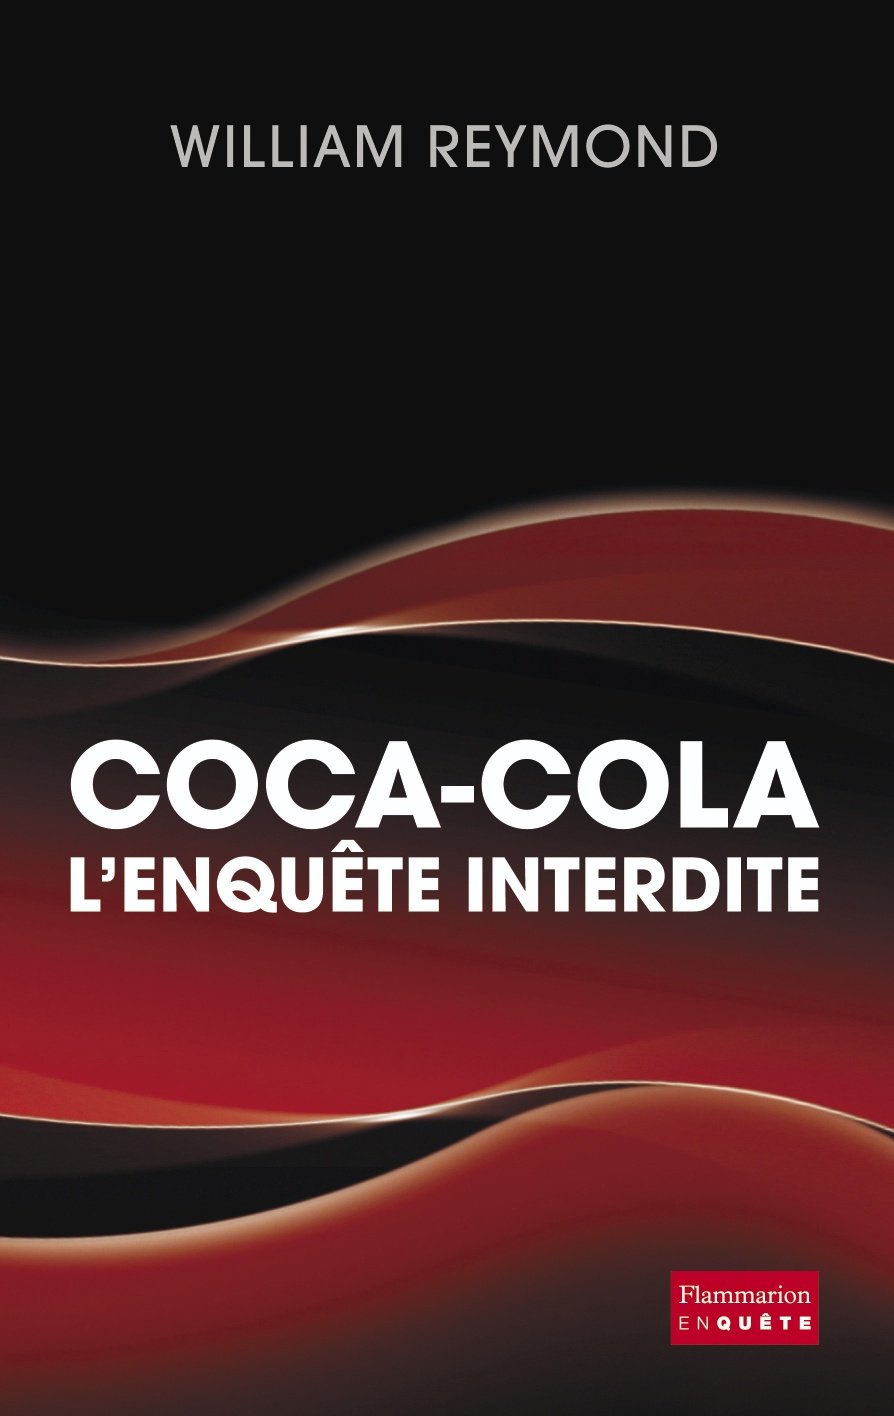 Livre ISBN 2080687646 Coca-Cola : L'enquête interdite (William Reymond)